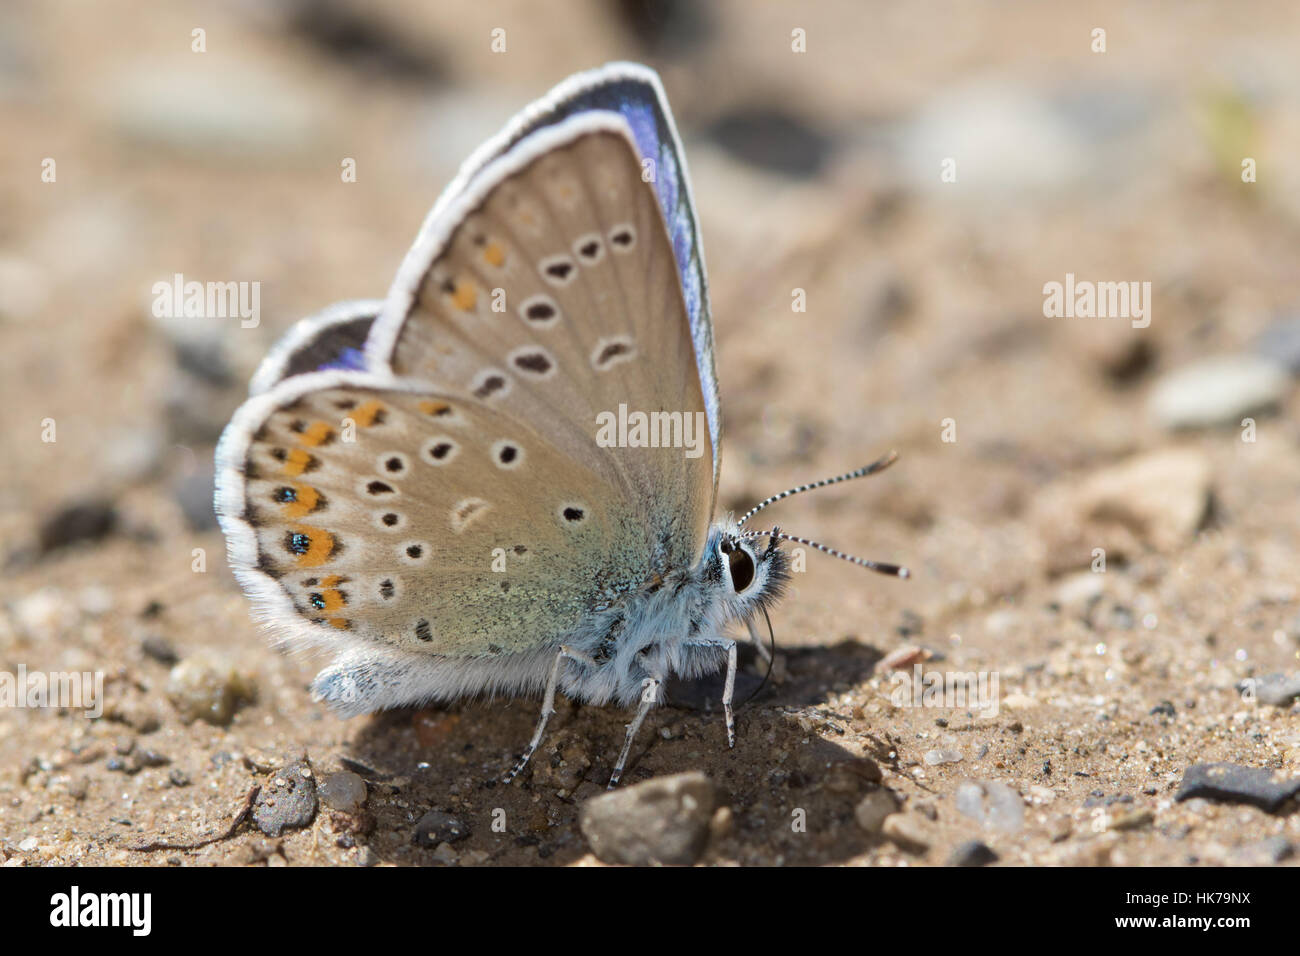 Idas blu (Plebejus idas) farfalla alimentazione su minerali dal terreno umido Foto Stock